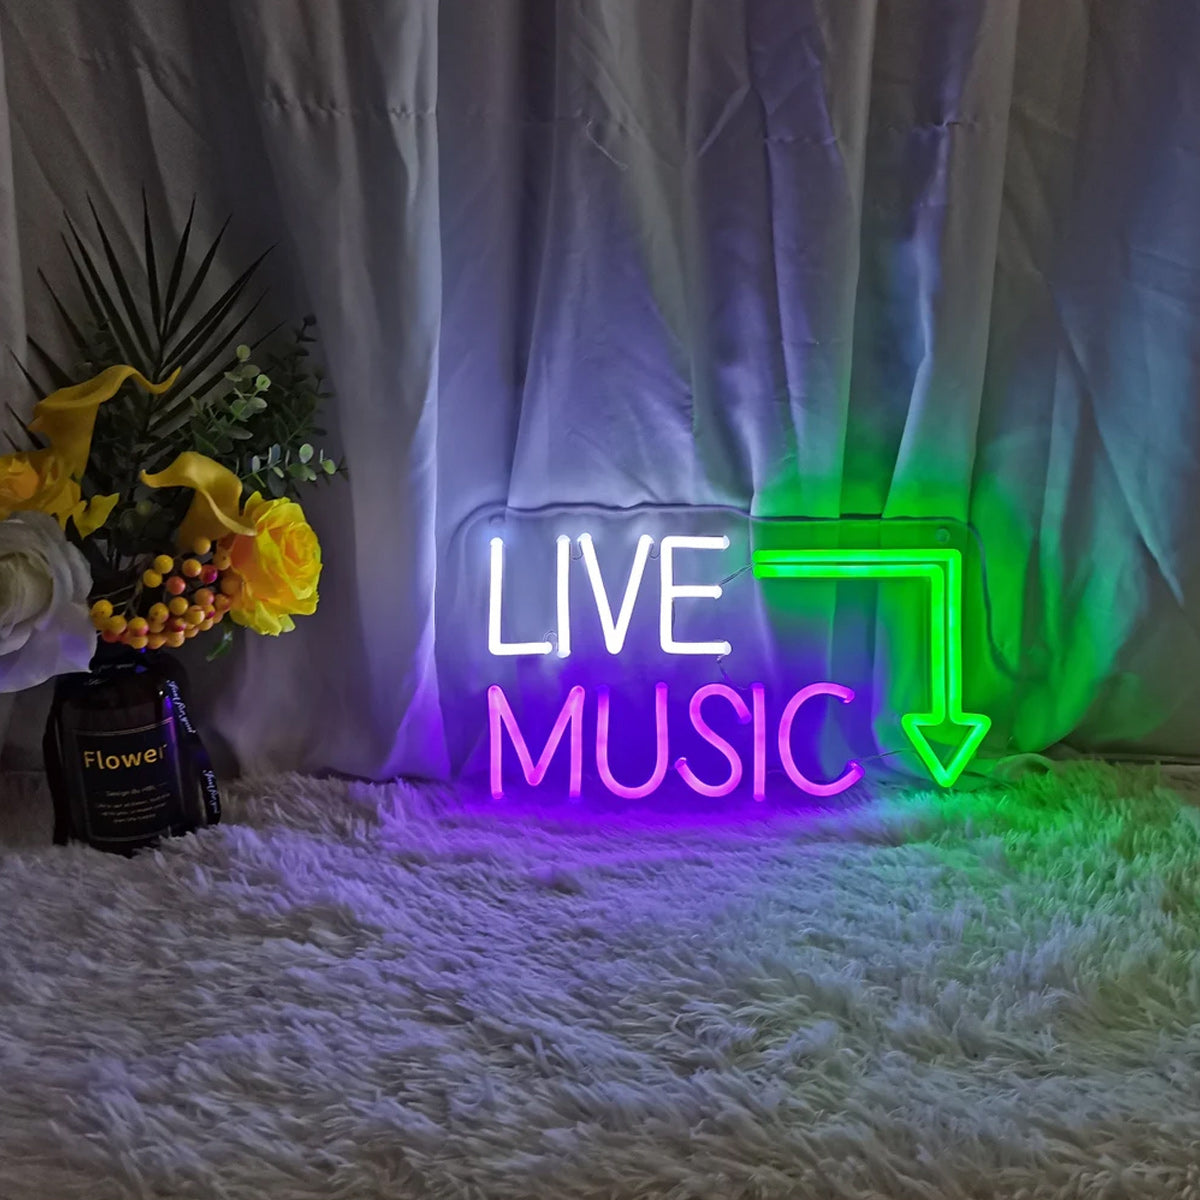 NEONIP-100% MUSICA DAL VIVO fatta a mano al neon, decorazione per studio musicale, decorazione per la casa retrò